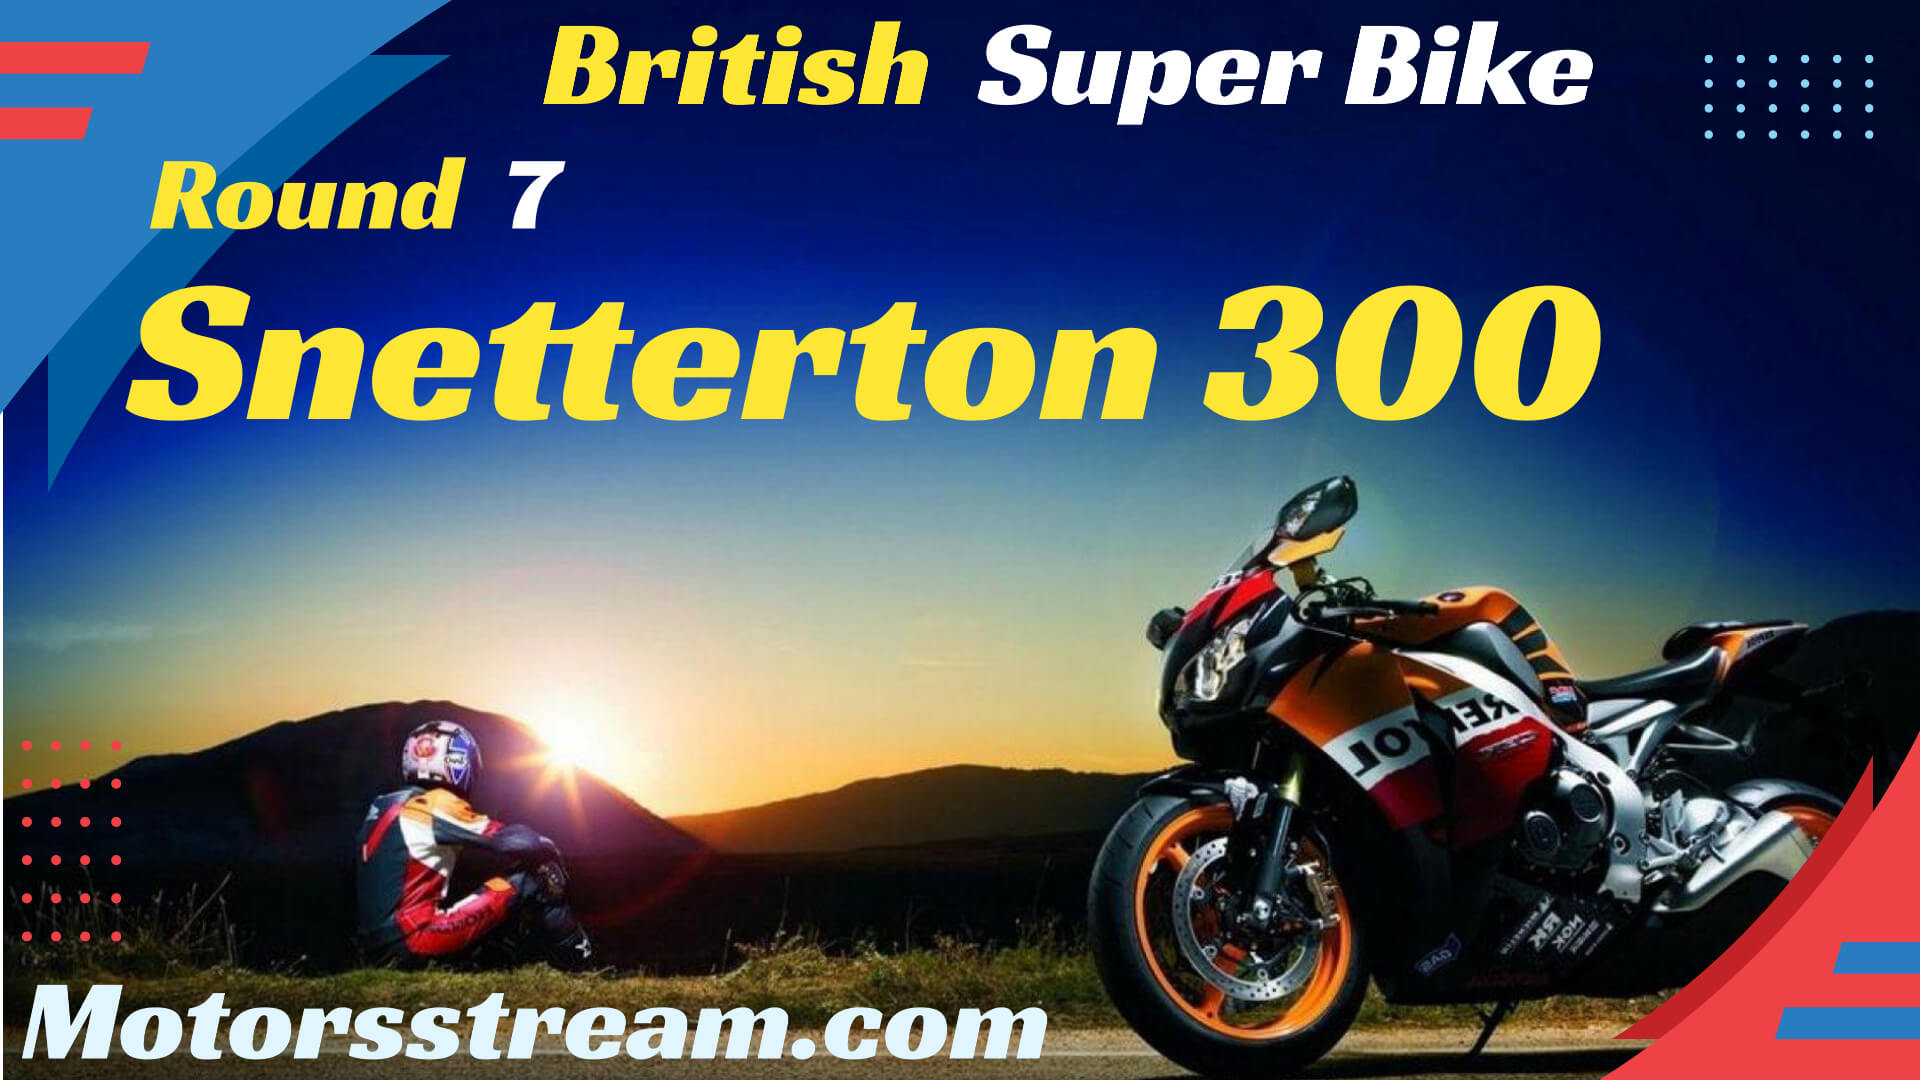 Snetterton 300 British Superbike Round 7 Live Stream